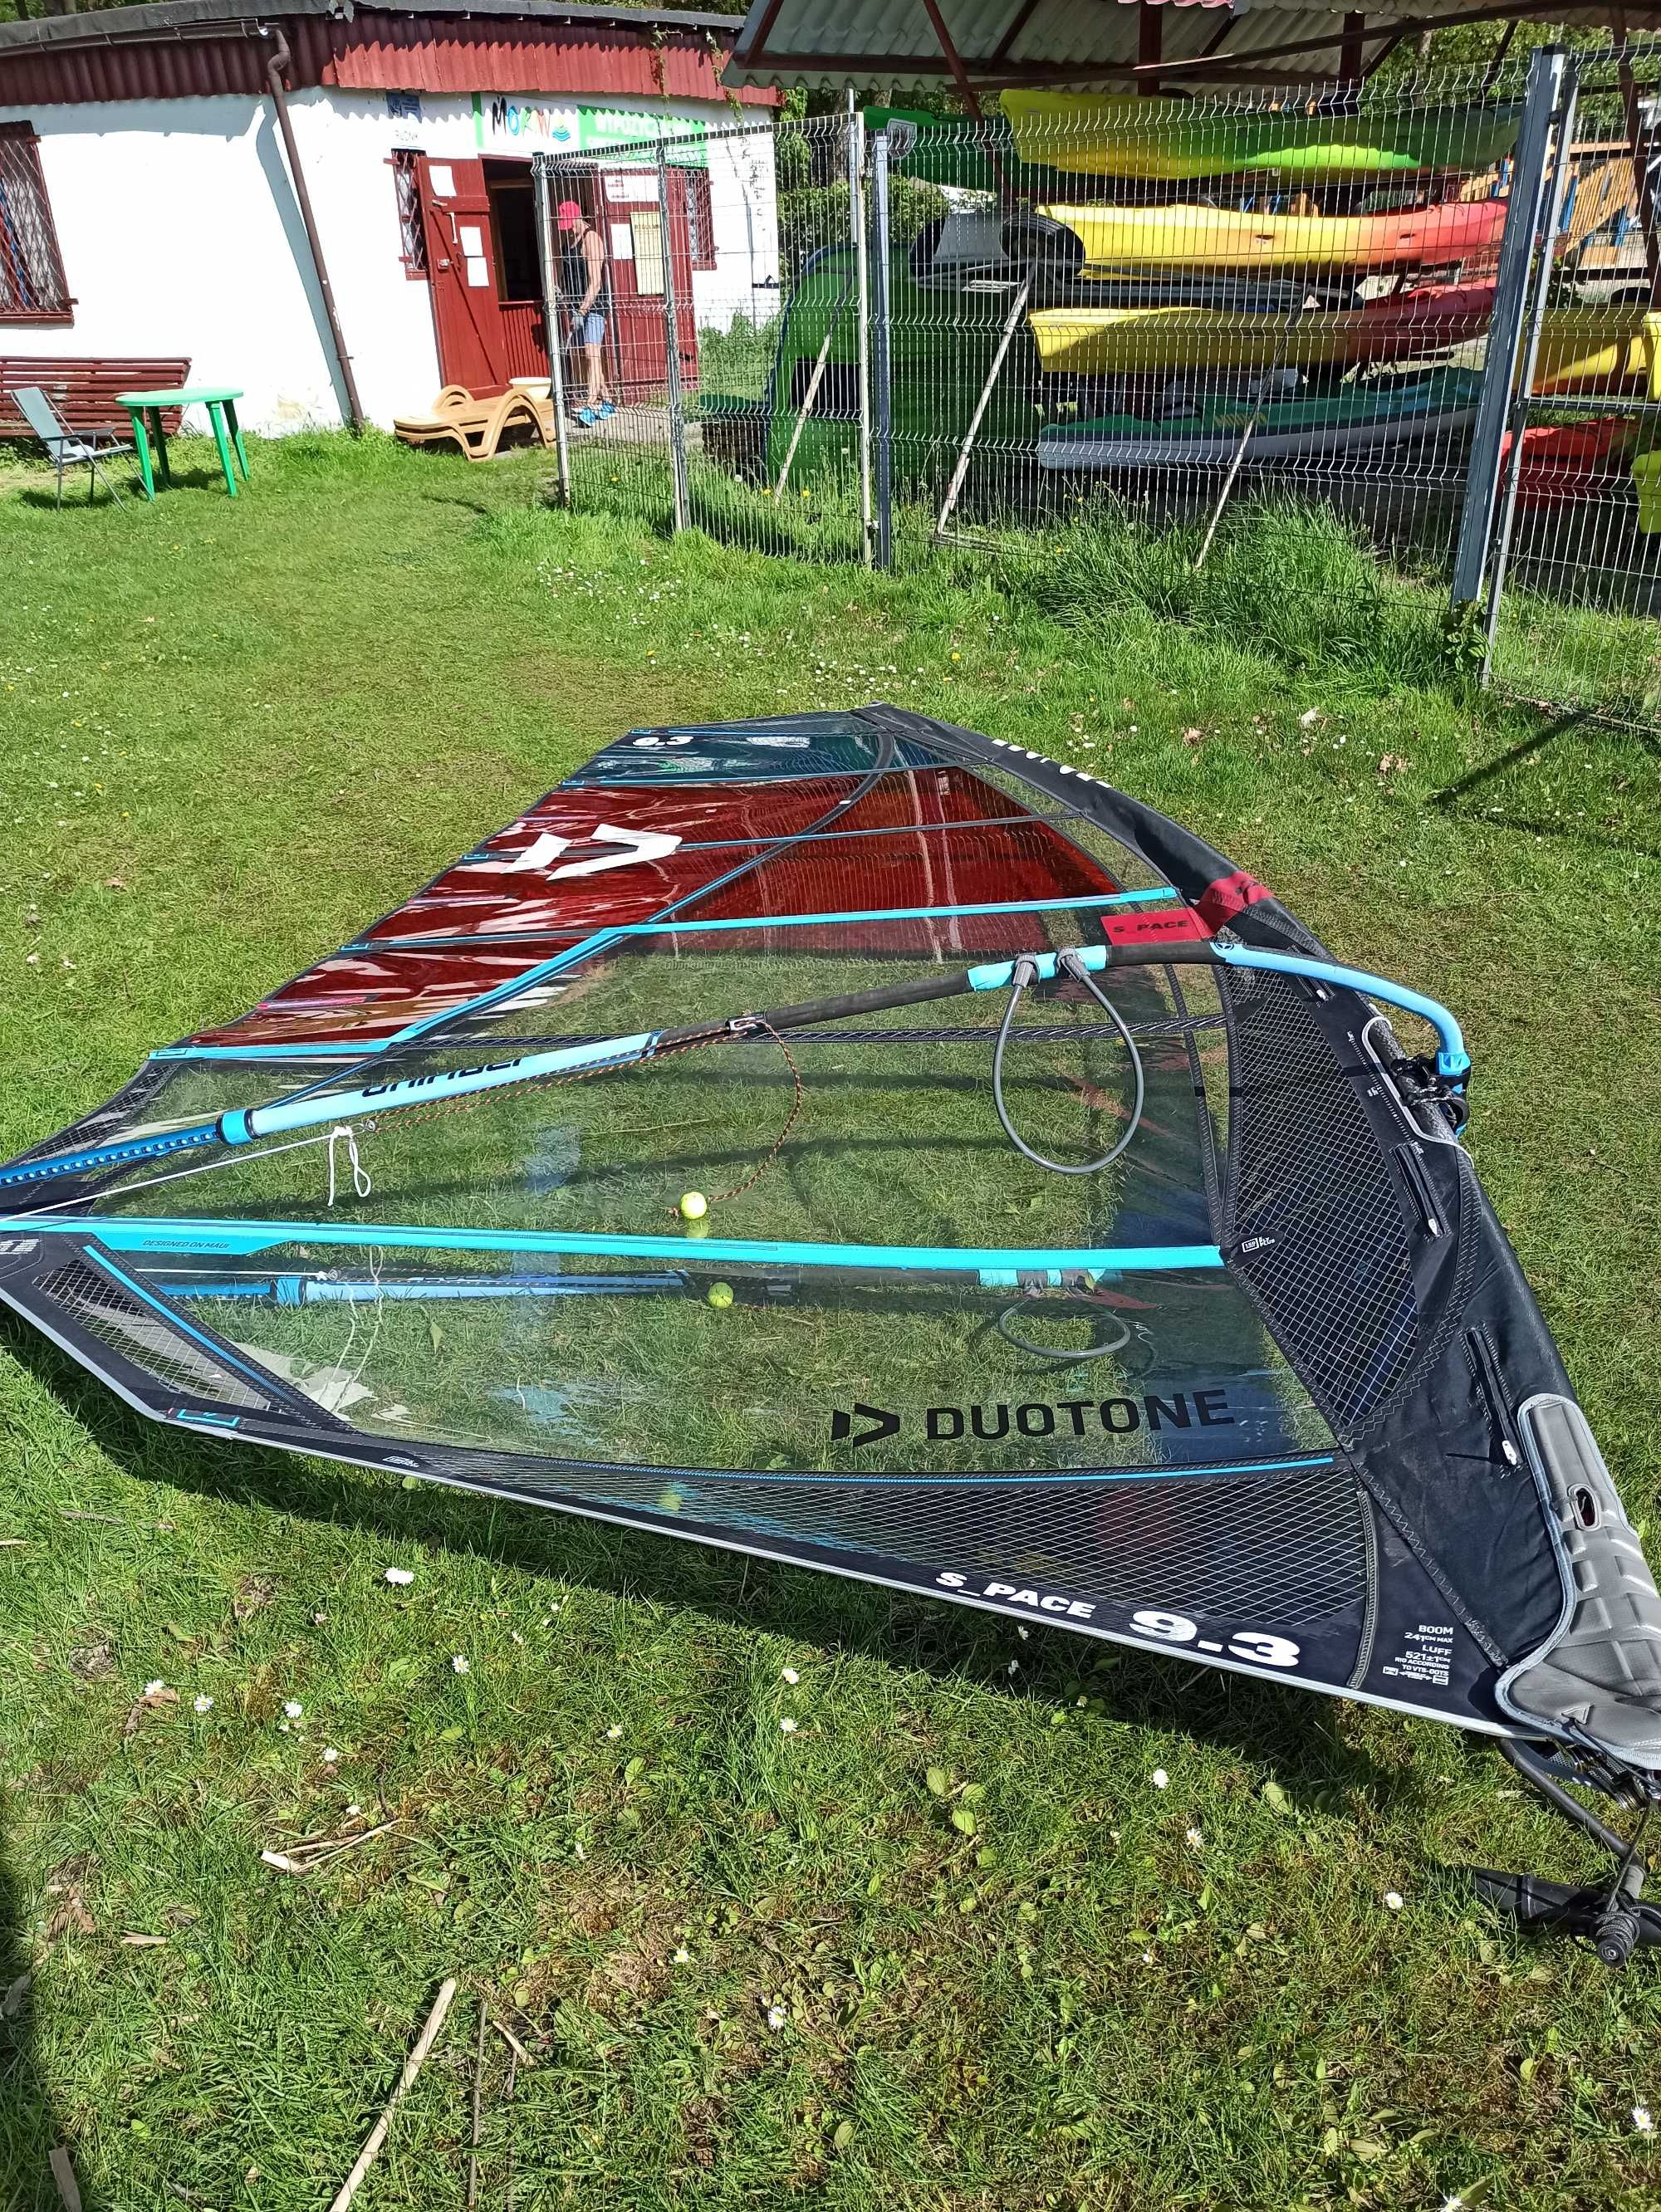 żągiel Duotone 9,3 s-pace - windsurfing